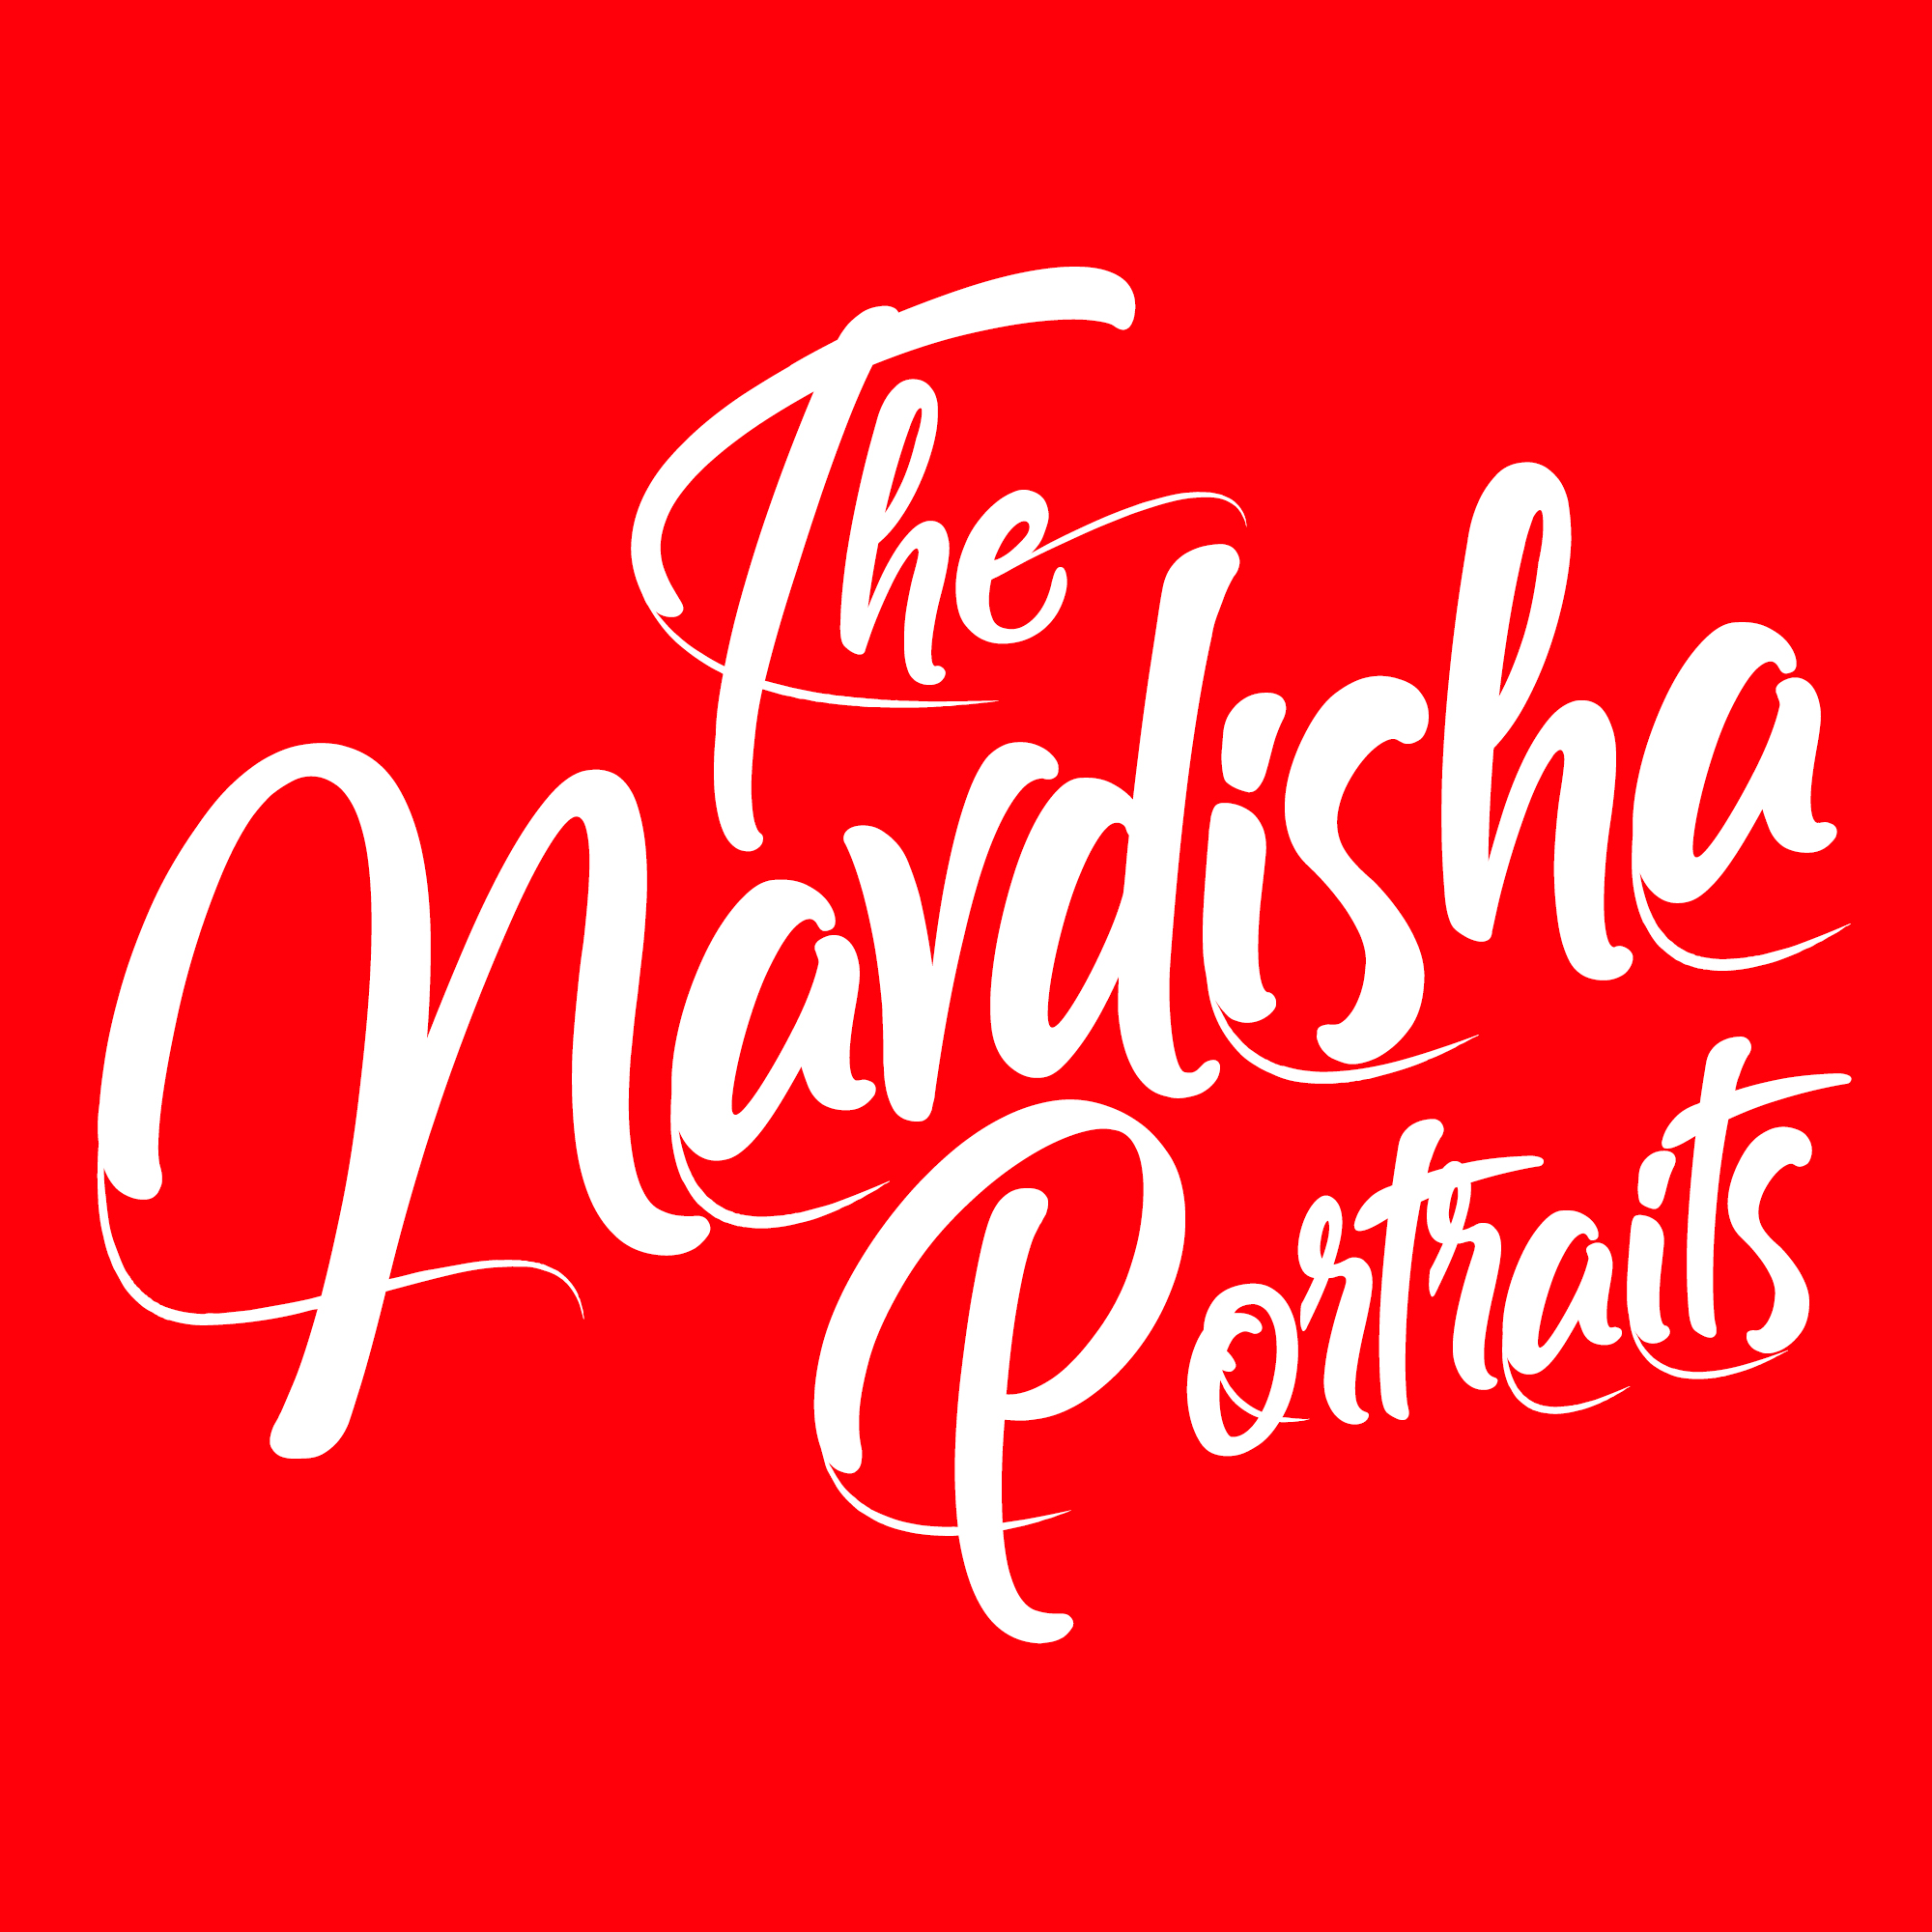 Navdisha Portraits